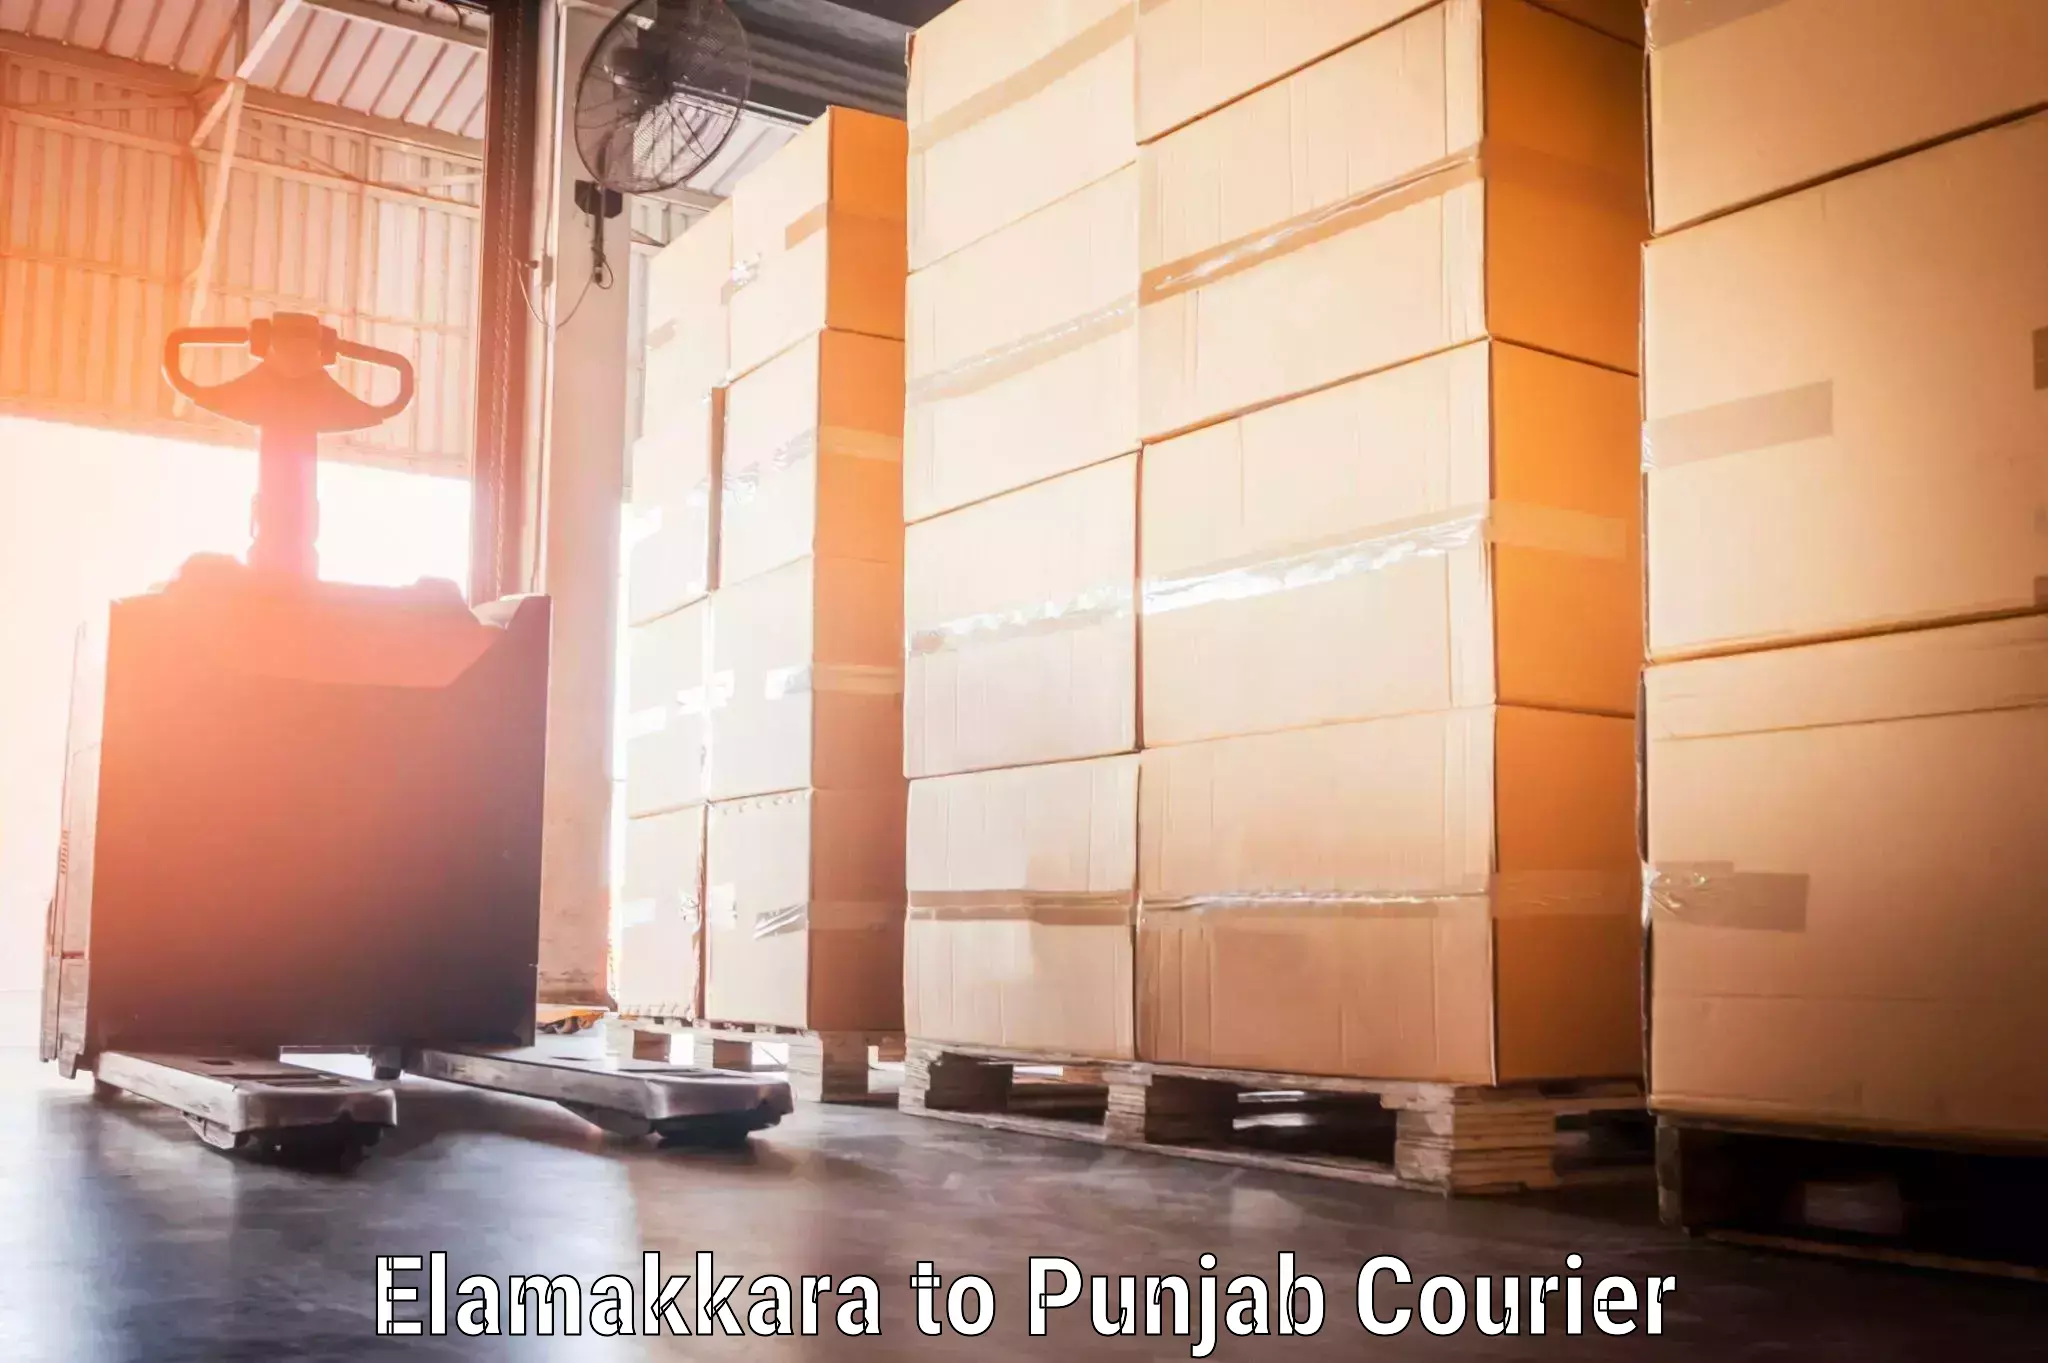 Instant baggage transport quote Elamakkara to Punjab